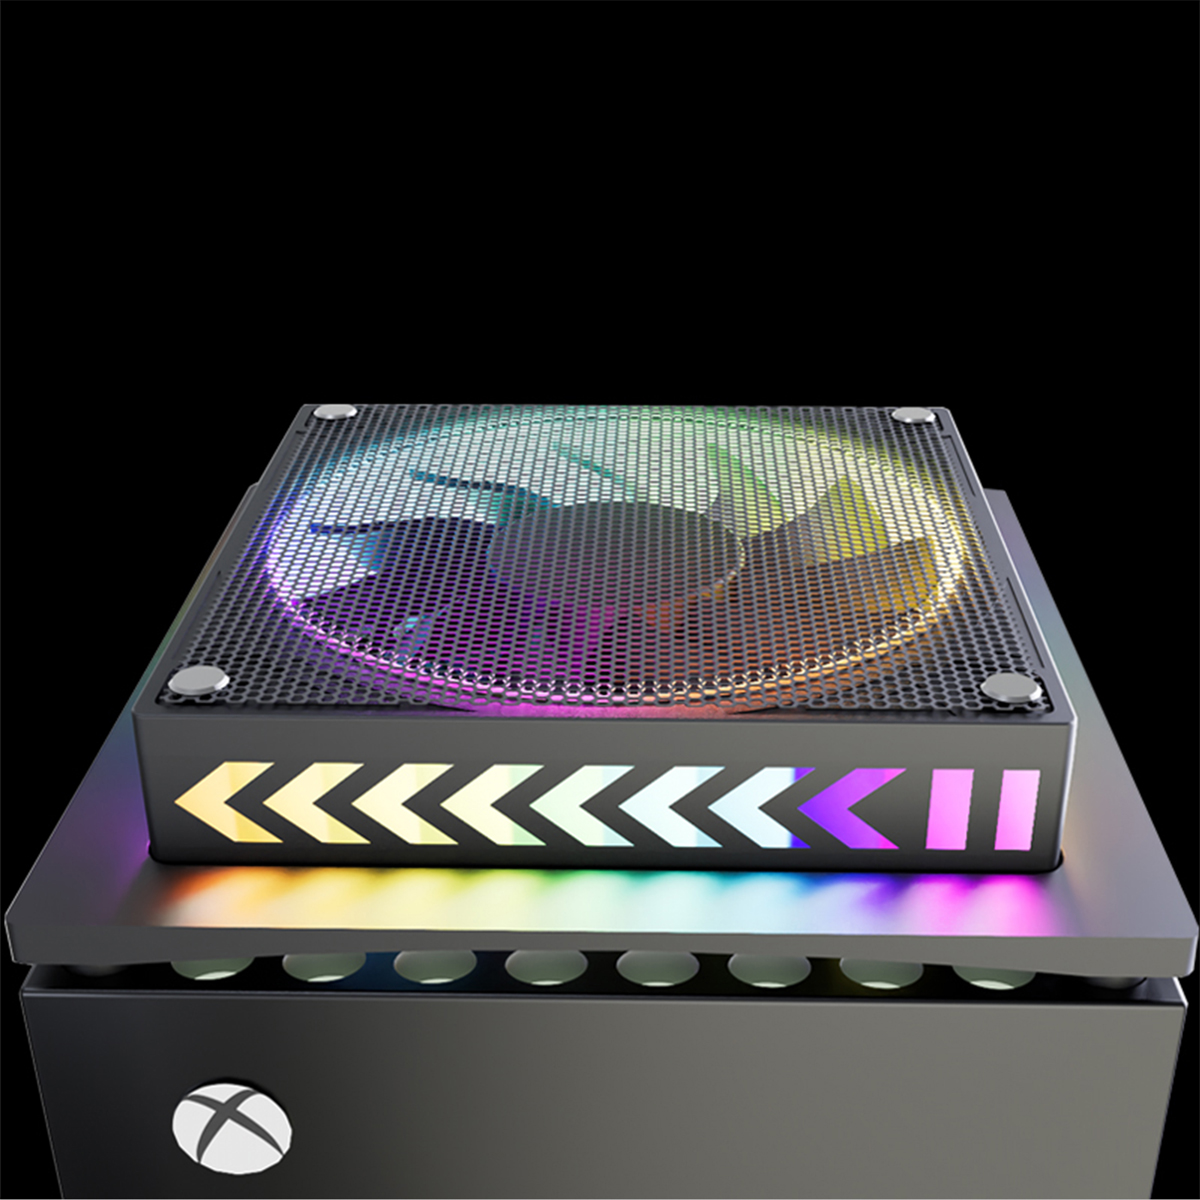 PlayStation RESPIEL 5-Controller, Xbox Dock,RGB, Konsolenzubehör, Kühlung Serie X/S schwarz XBOX-Konsole LED-Lichtleiste,für